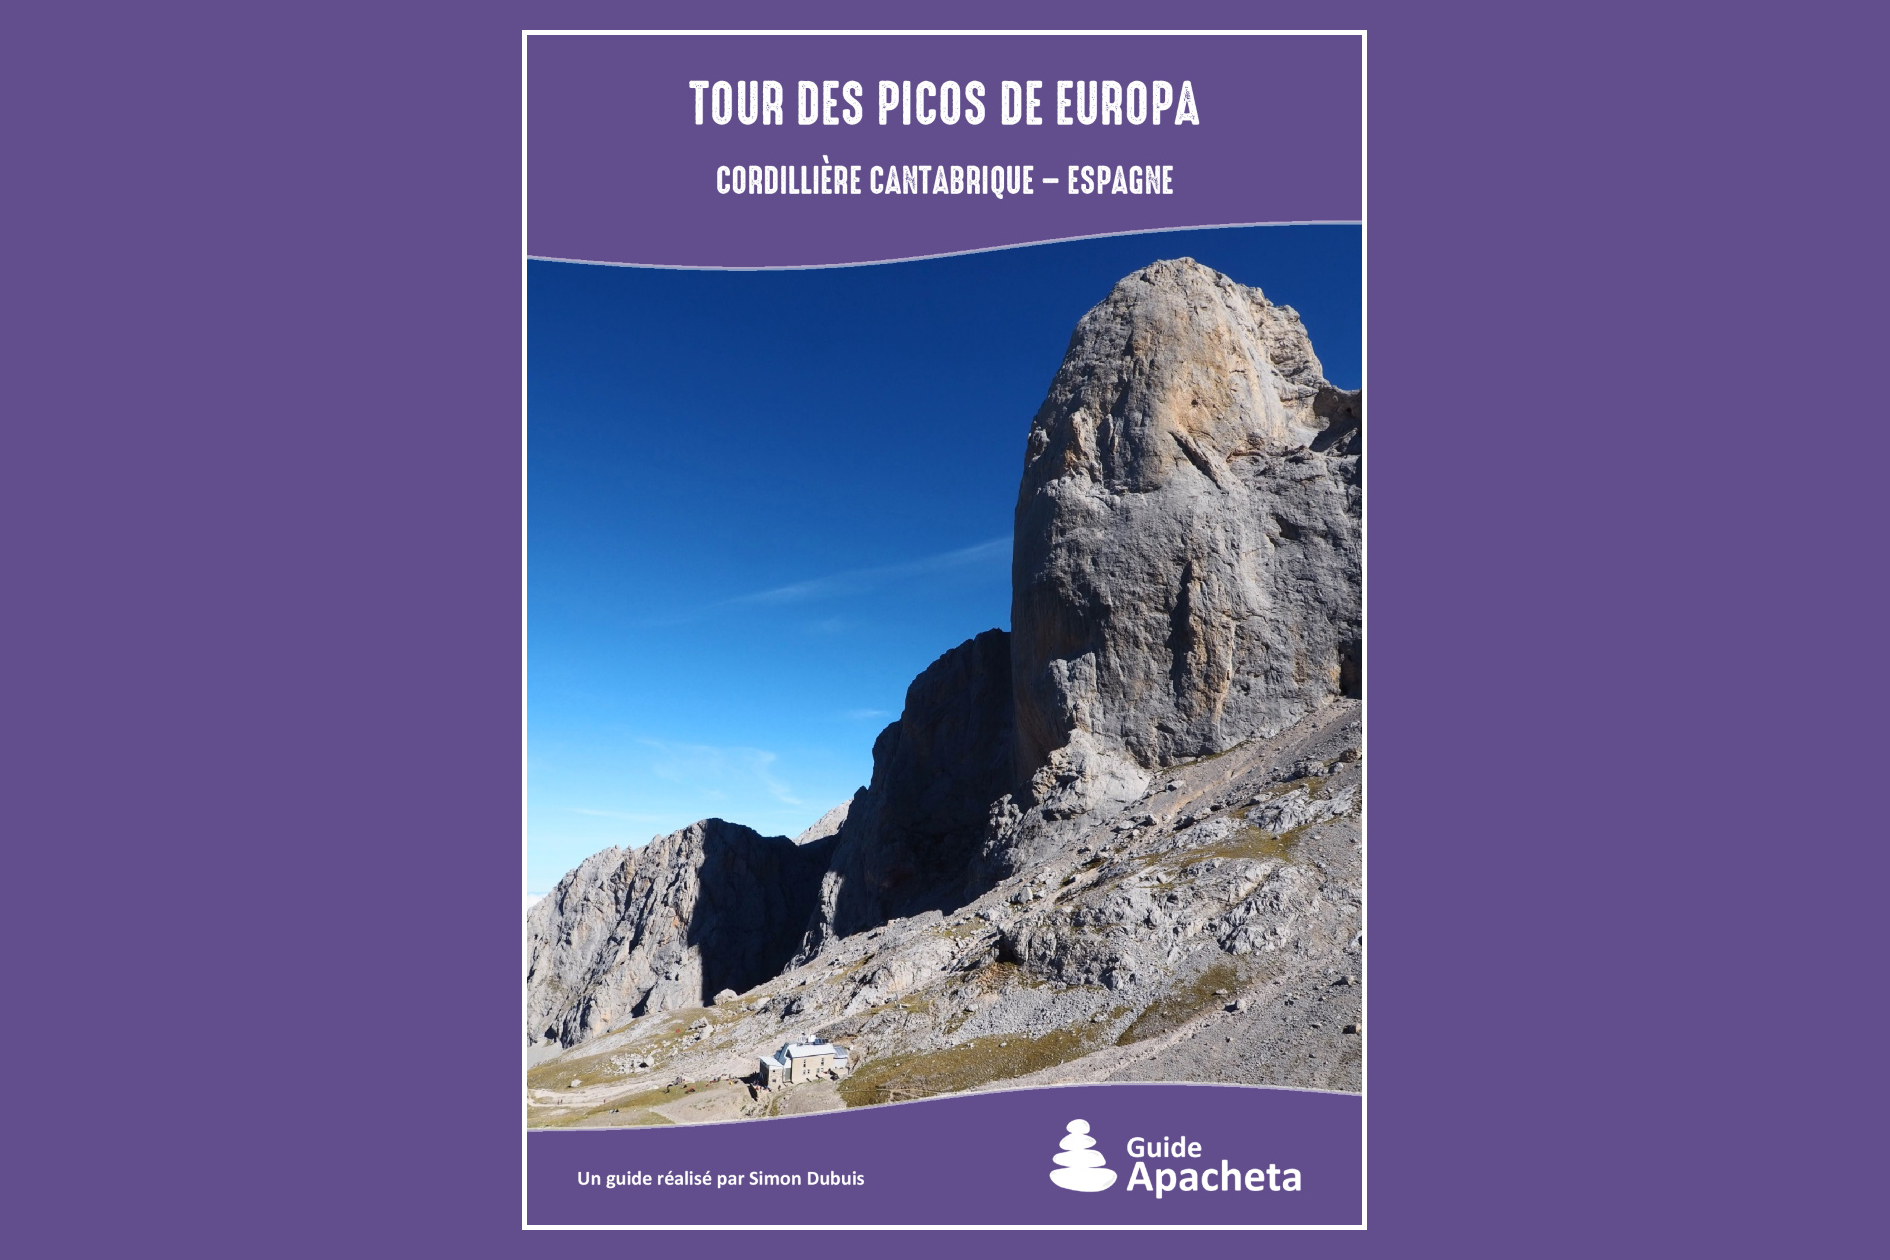 Gagne le topo-guide Tour de Picos de Europa des édition Apacheta